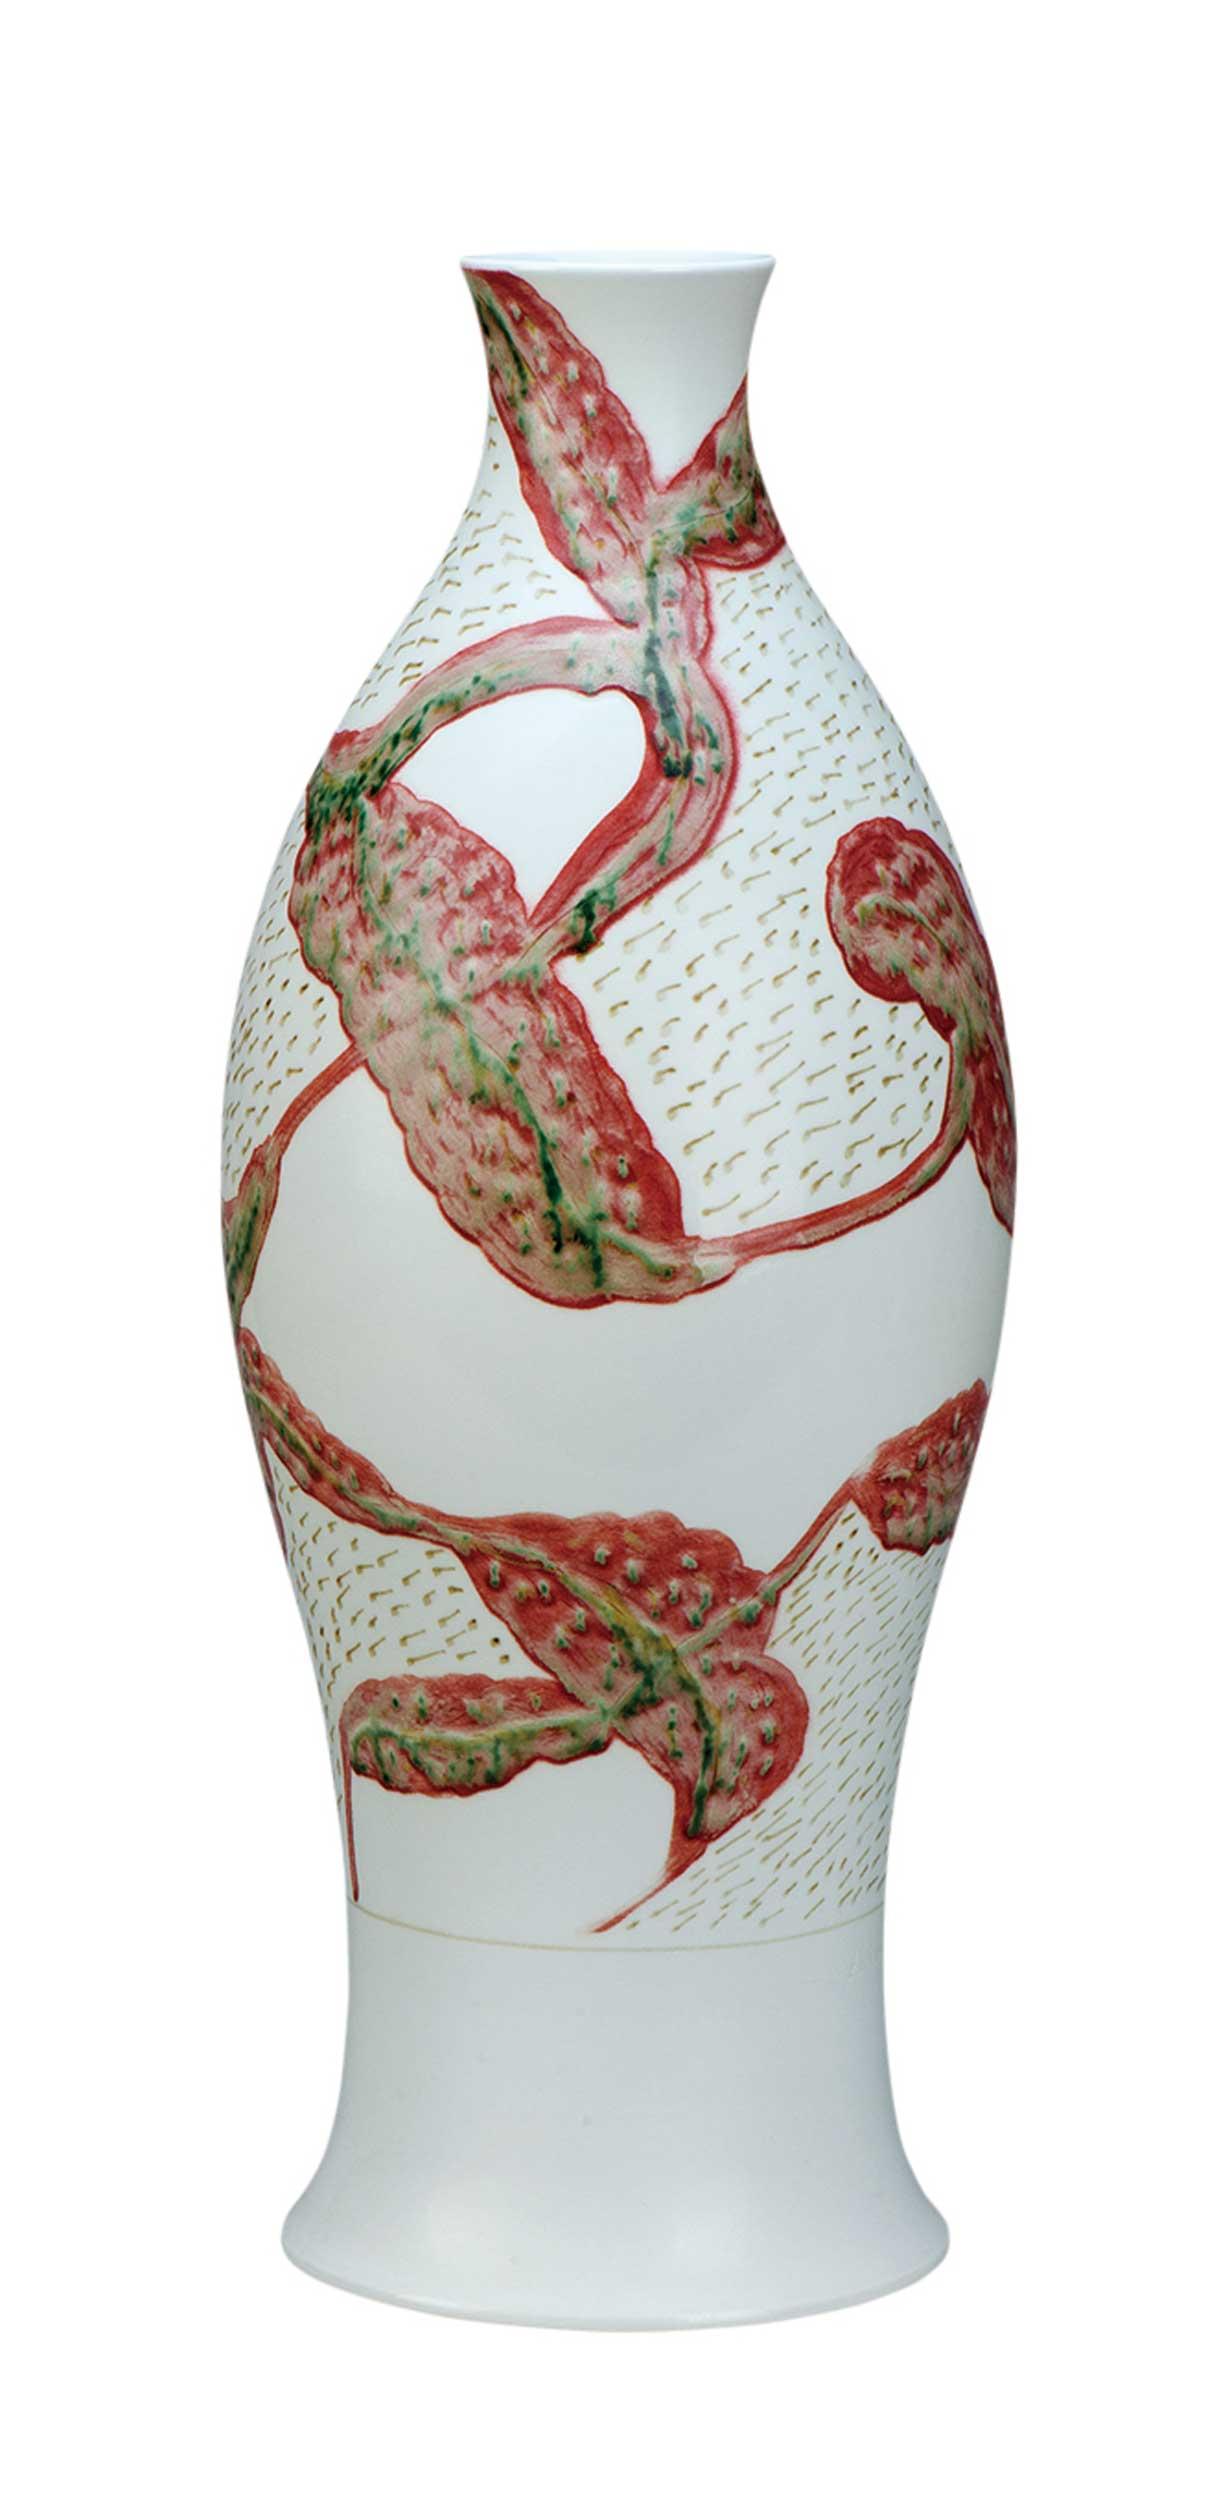 新梅瓶·太阳雨^_^A New Plum Vase·Sunny Rain_白明_白明作品展_白明在线作品_白明官方网站-雅昌艺术家网